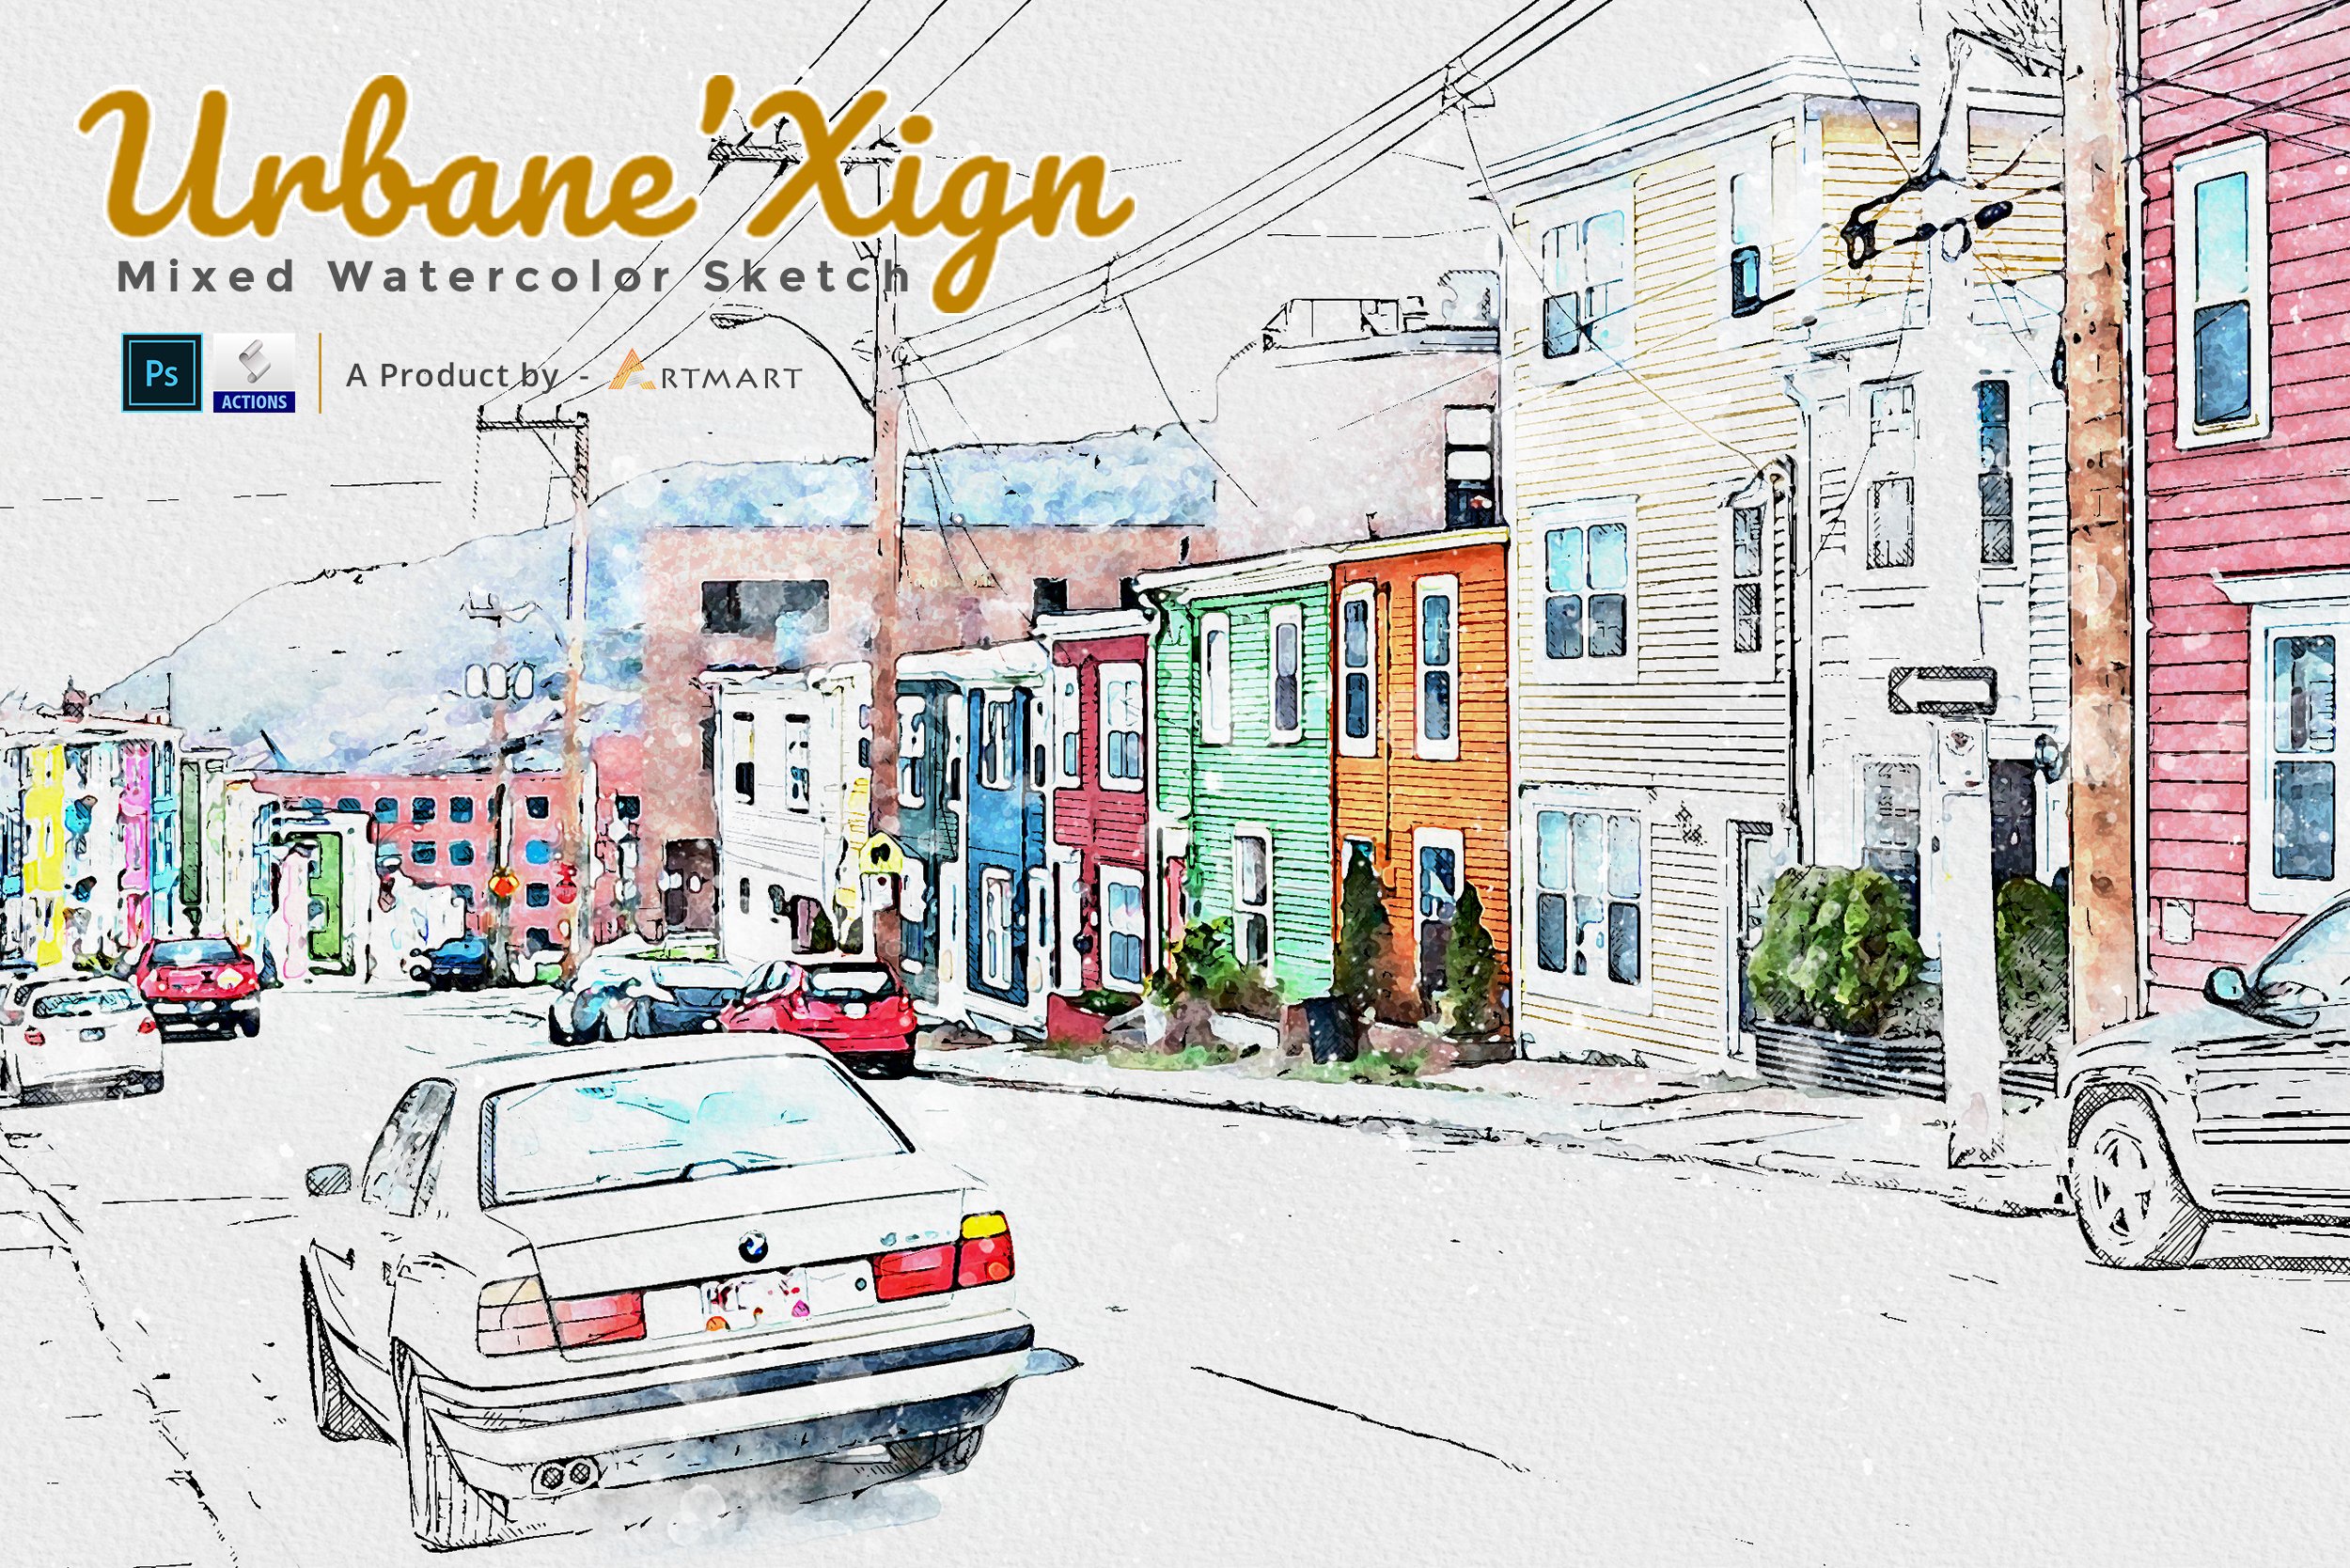 UrbaneXign - Mixed Watercolor Sketchcover image.